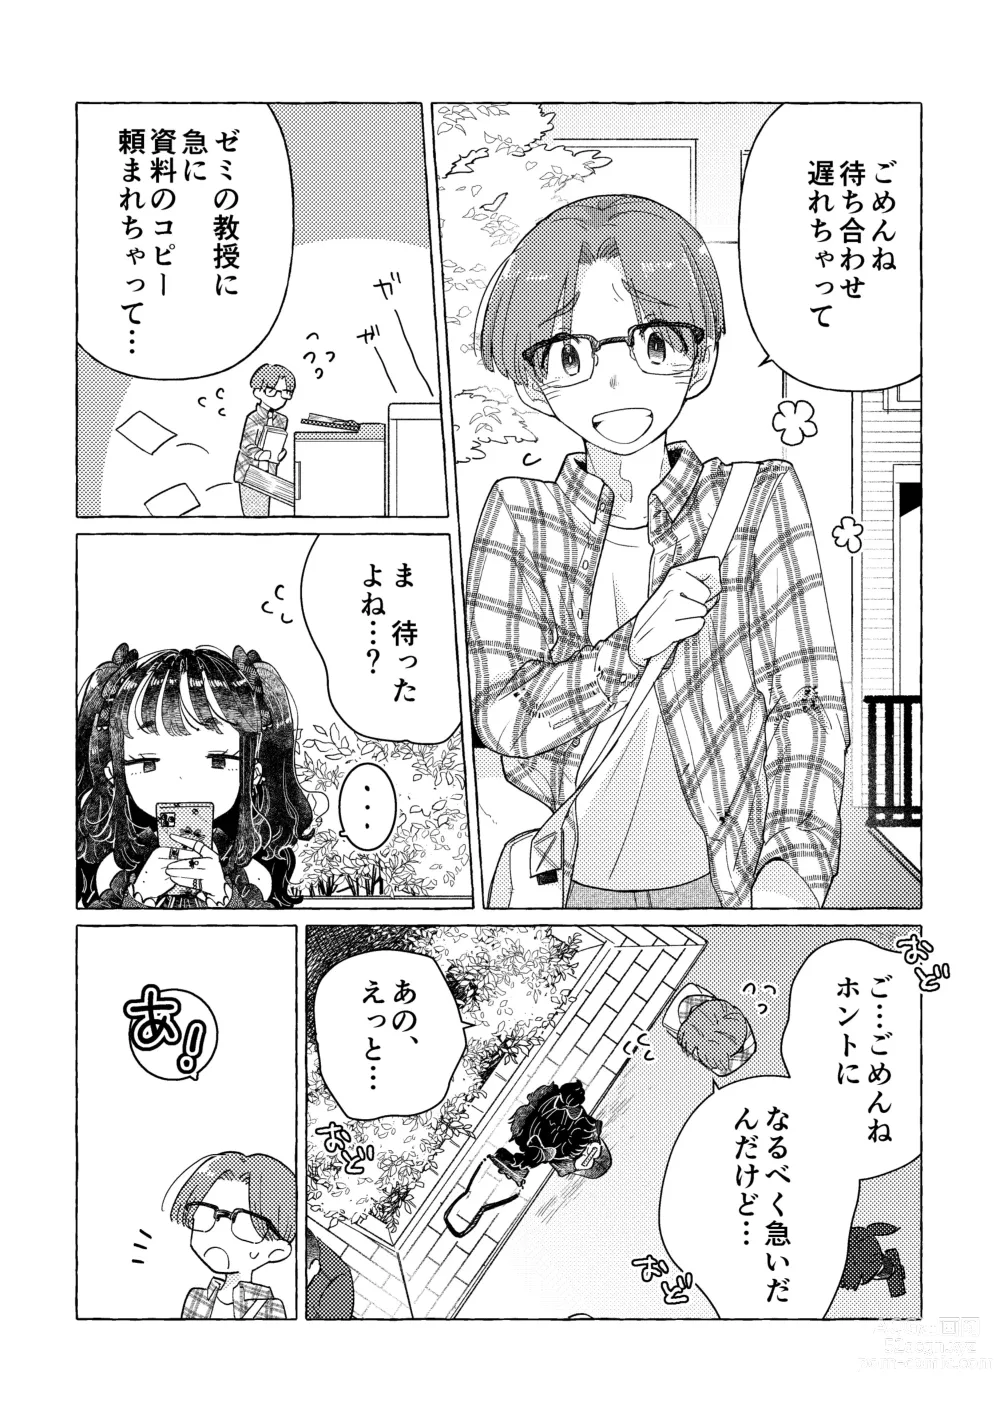 Page 6 of doujinshi Jiraikei Josou Danshi Mine-chan